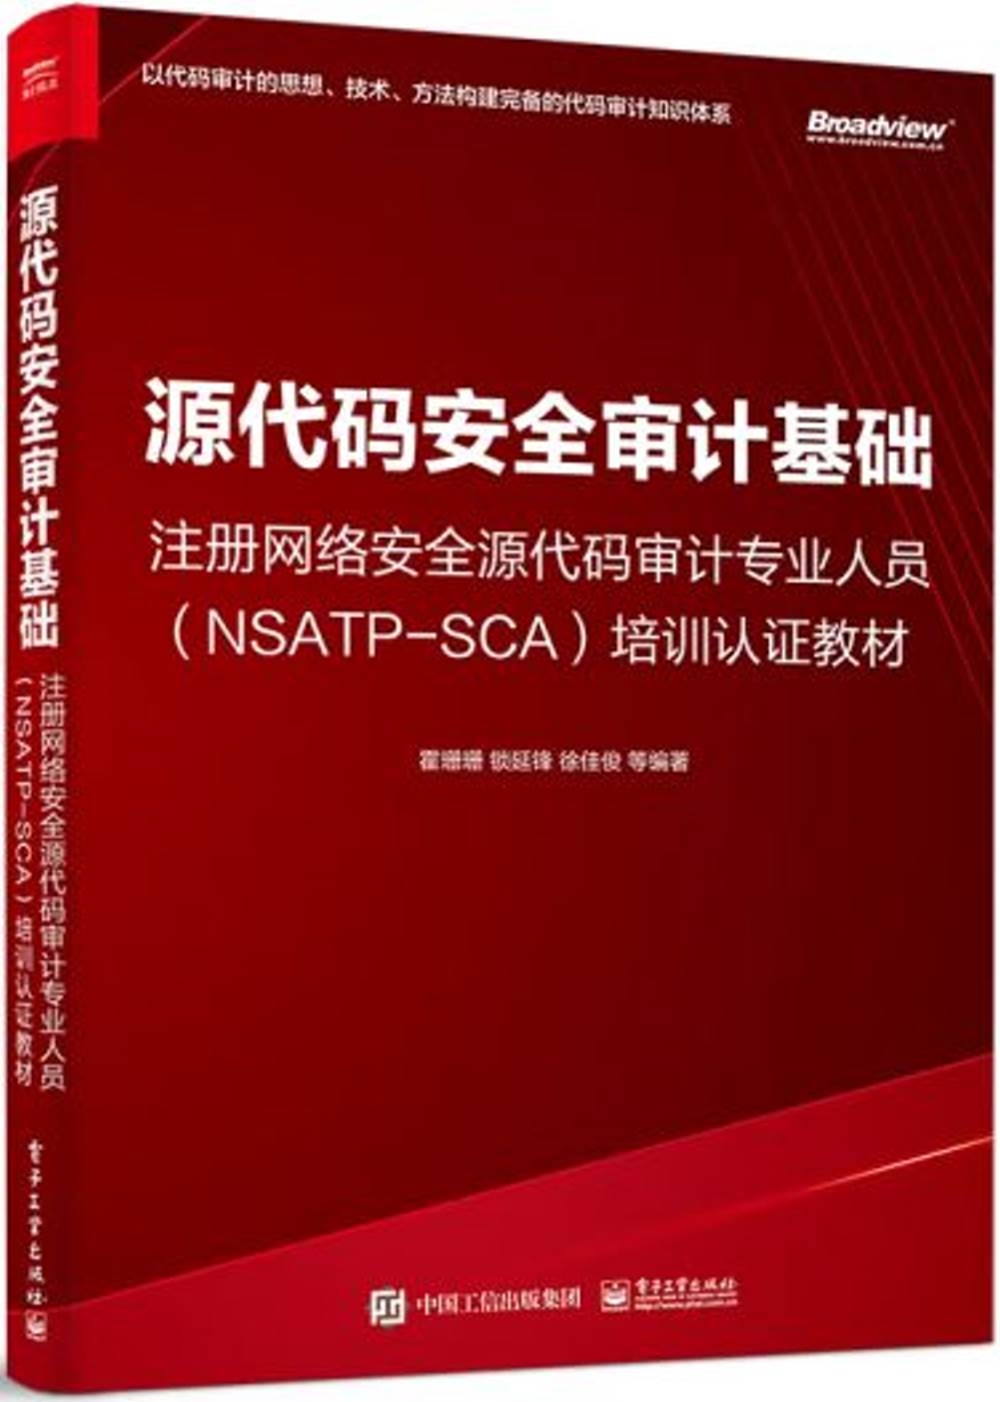 源代碼安全審計基礎：註冊網絡安全源代碼審計專業人(NSATP-SCA)培訓認證教材